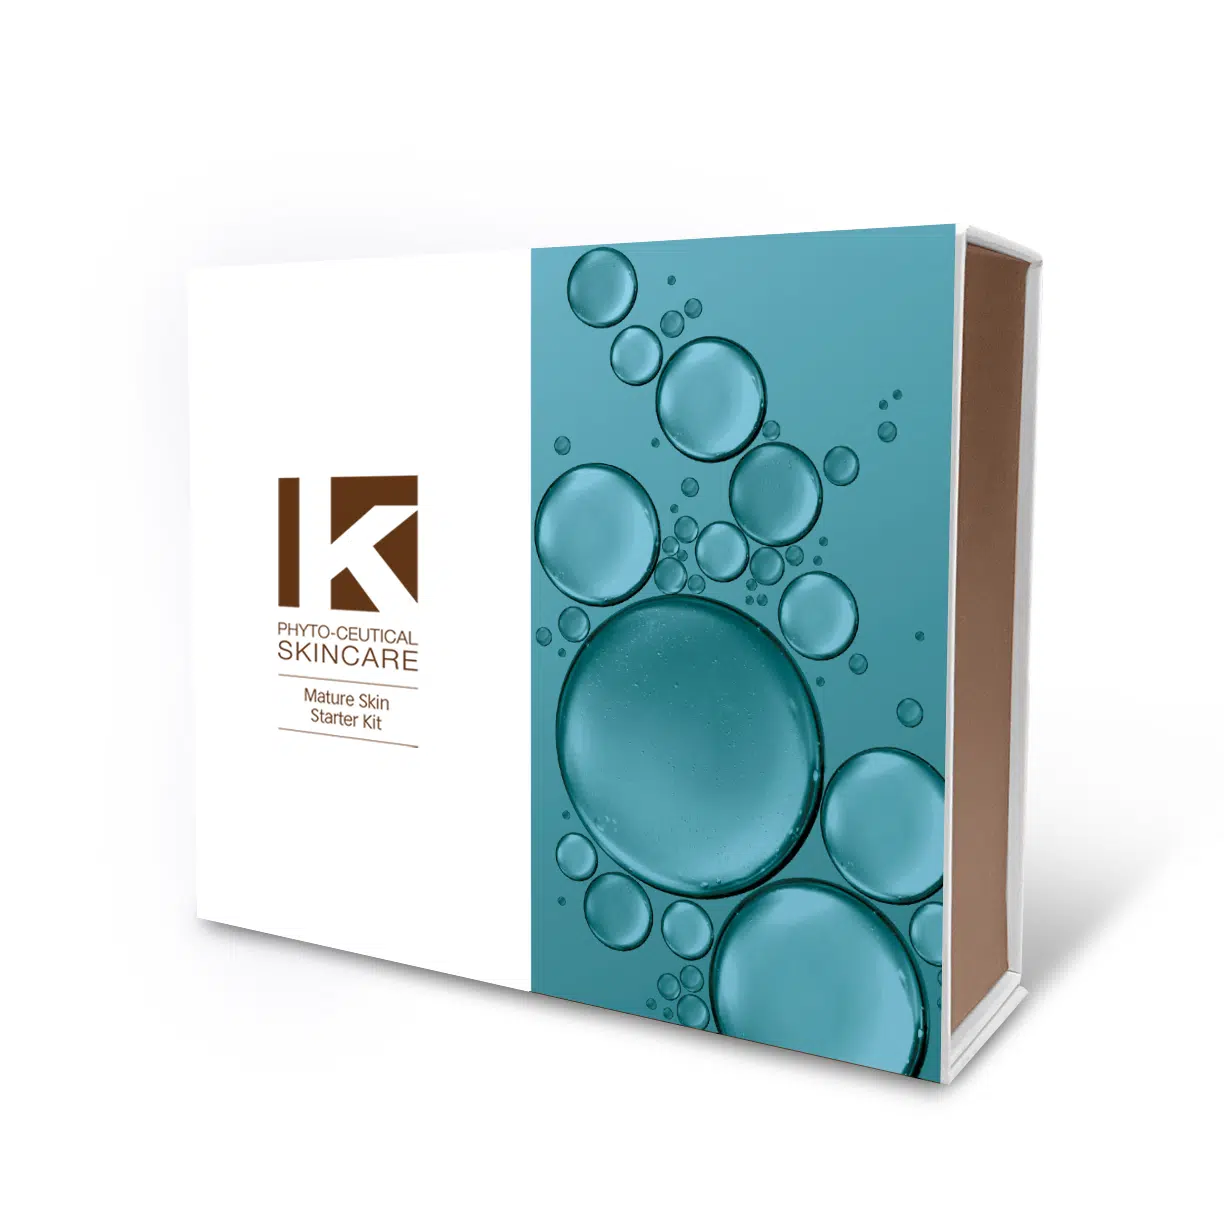 K Phyto-Ceutical Skincare - Mature Skin Kit